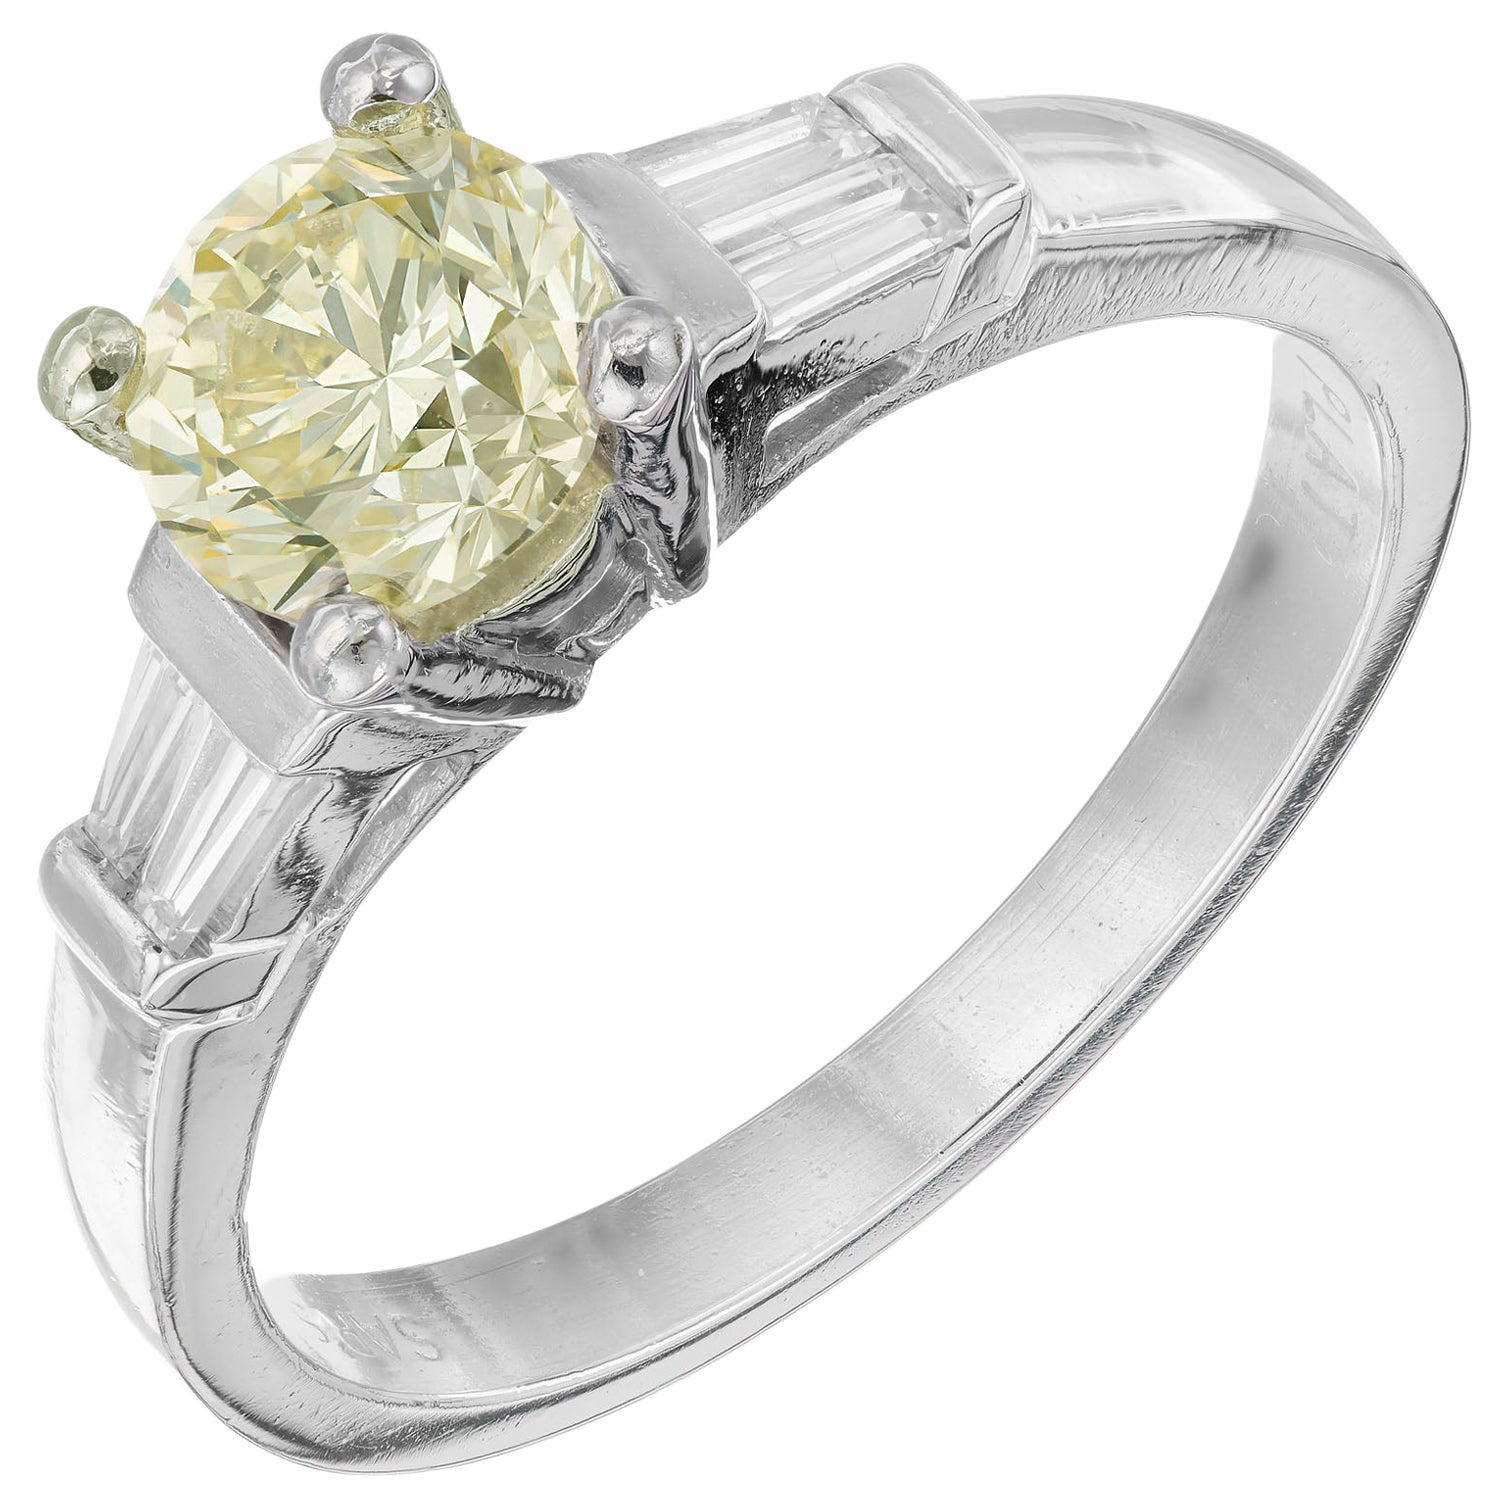 GIA Certified 1.02 Carat Yellow Diamond Platinum Engagement Ring